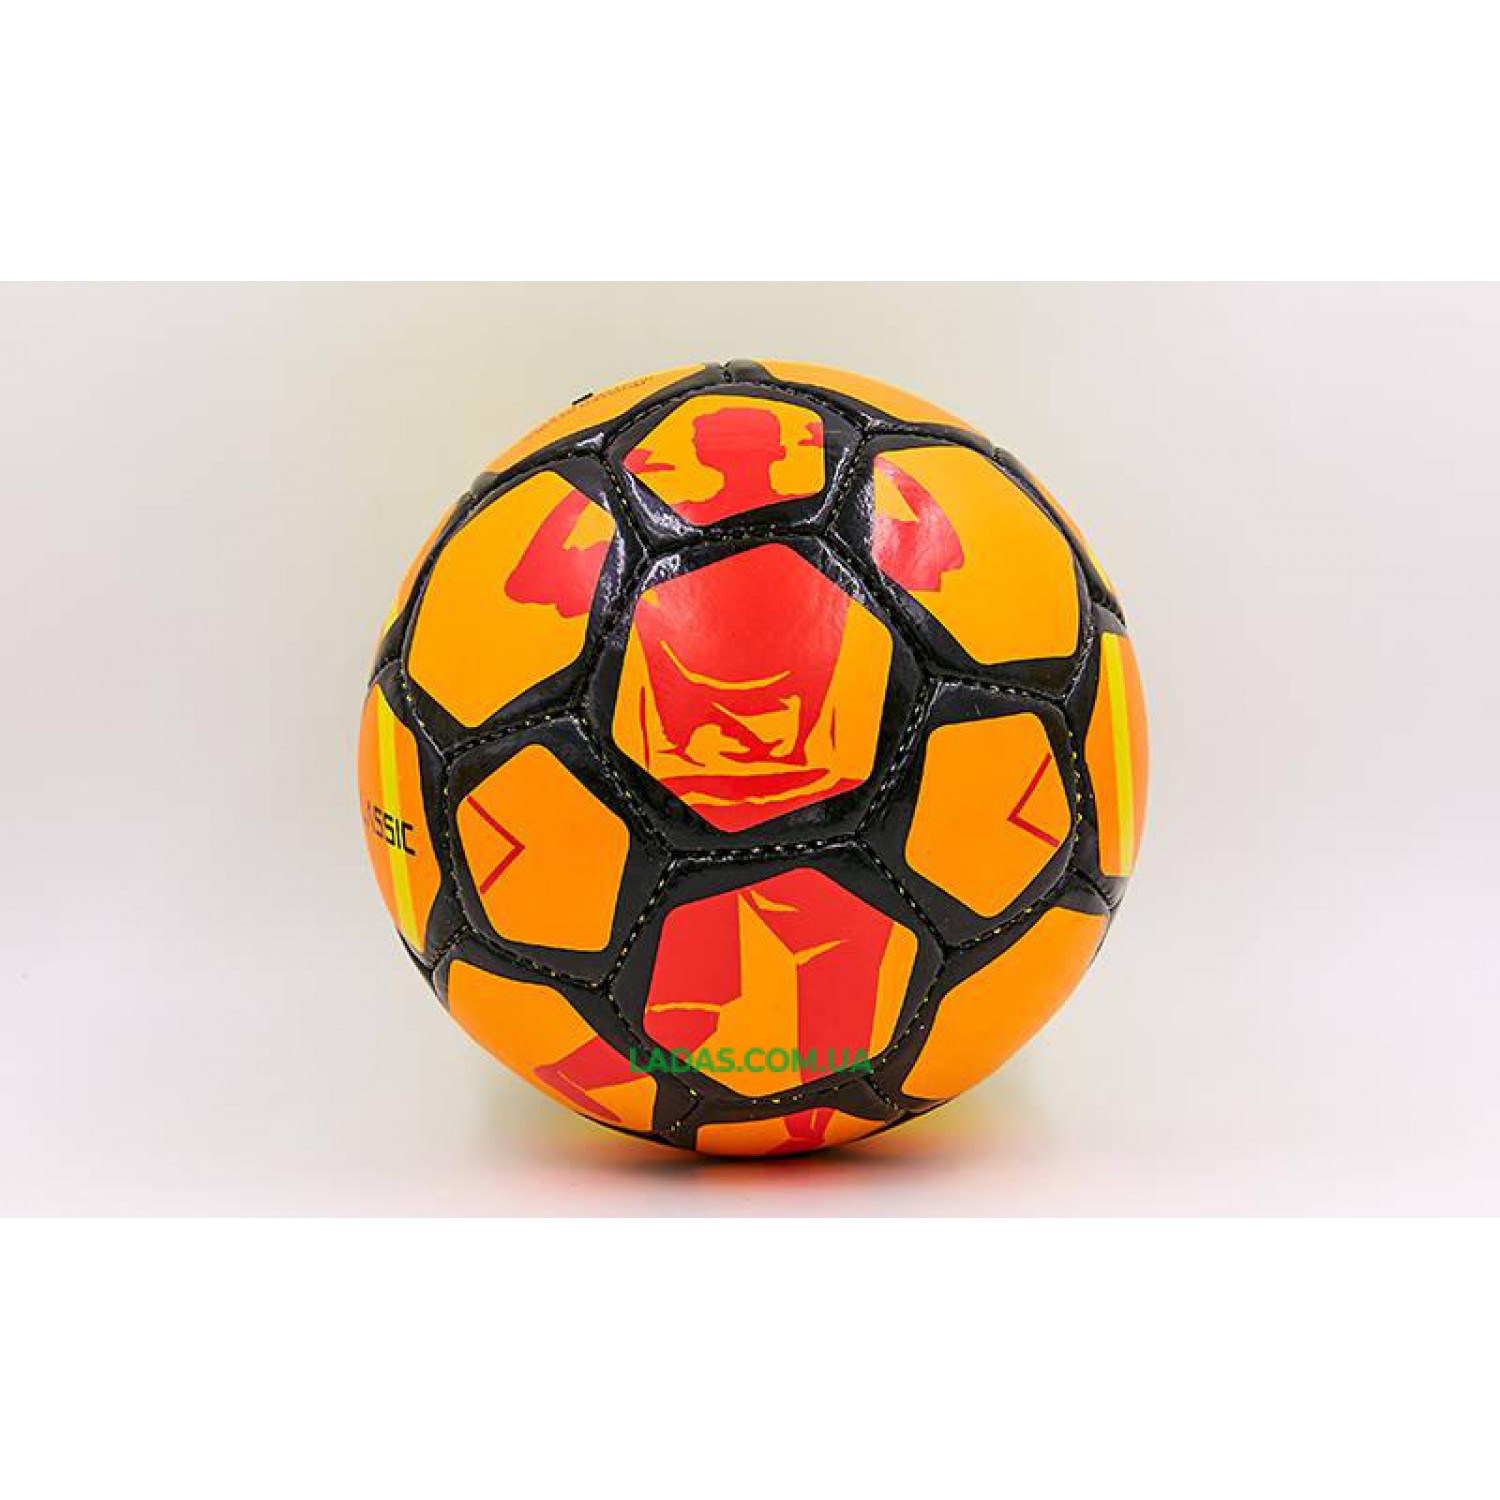 Мяч футбольный №5 PU ламинированный ST CLASSIC REPLICA (бело-синий, сшит вручную)